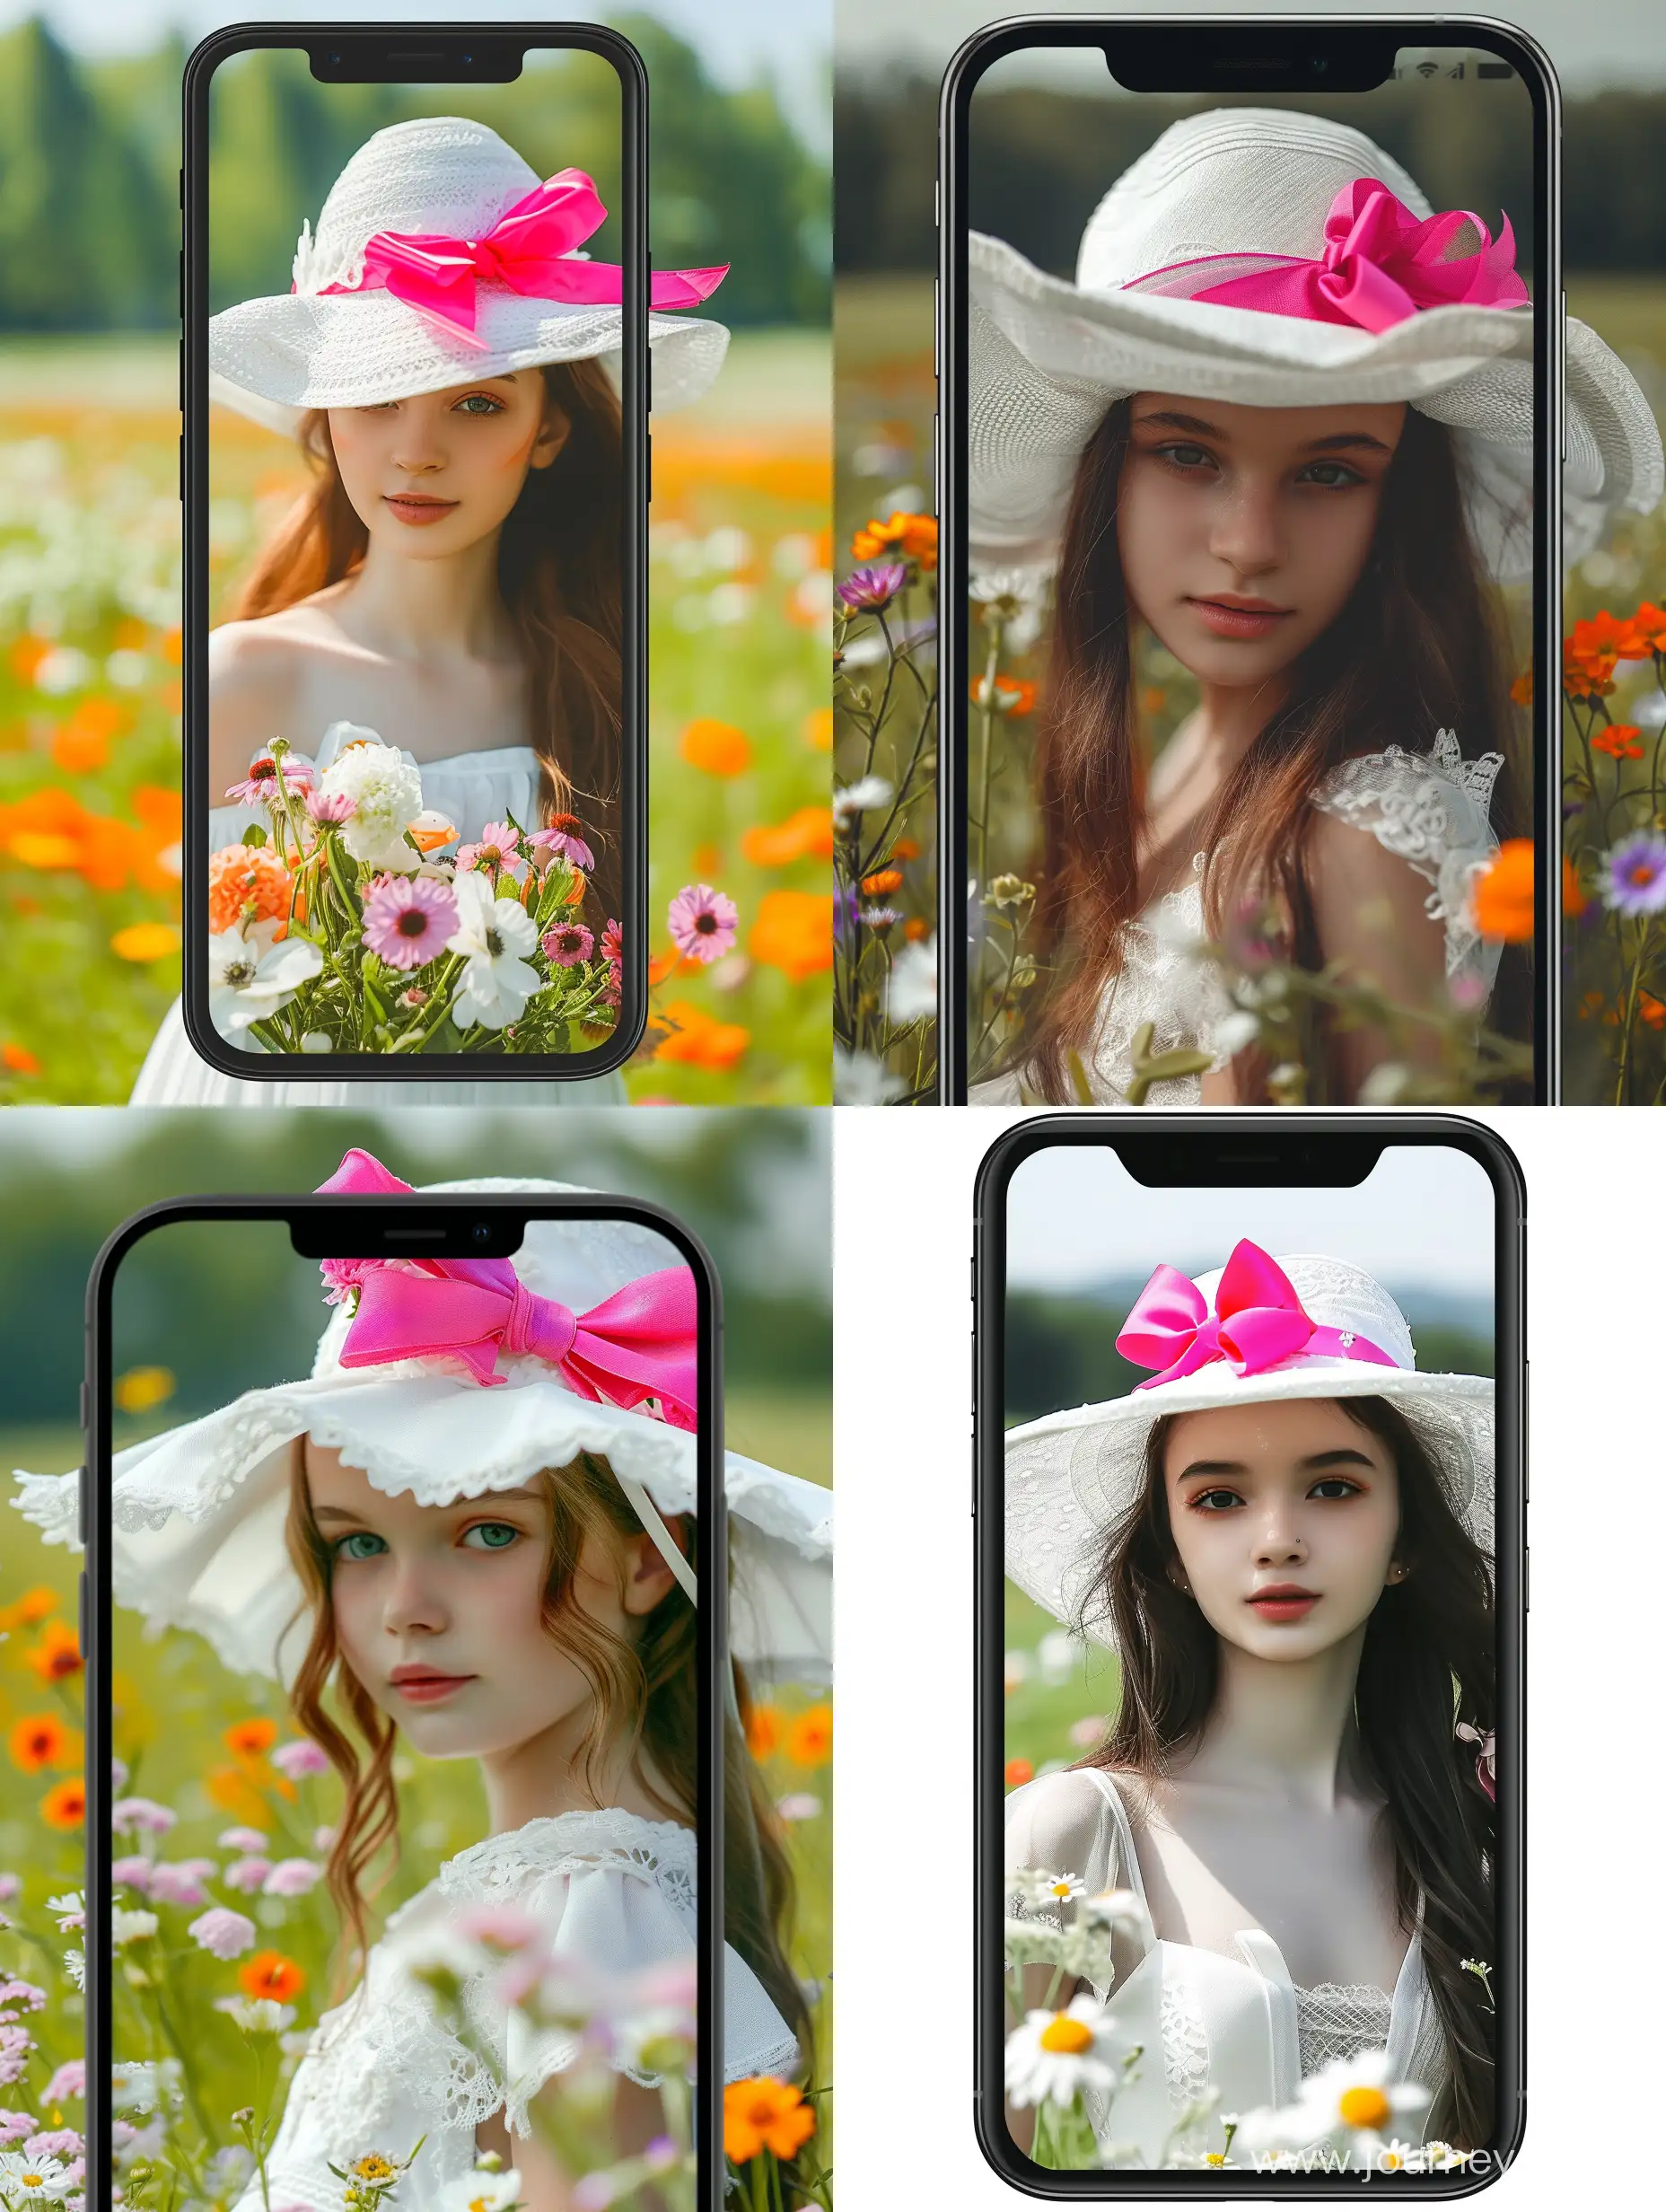 Фото на телефон, на котором красивая девушка с цветами в белой шляпе с ярким розовым бантом, в белом платье, на летнем поле.